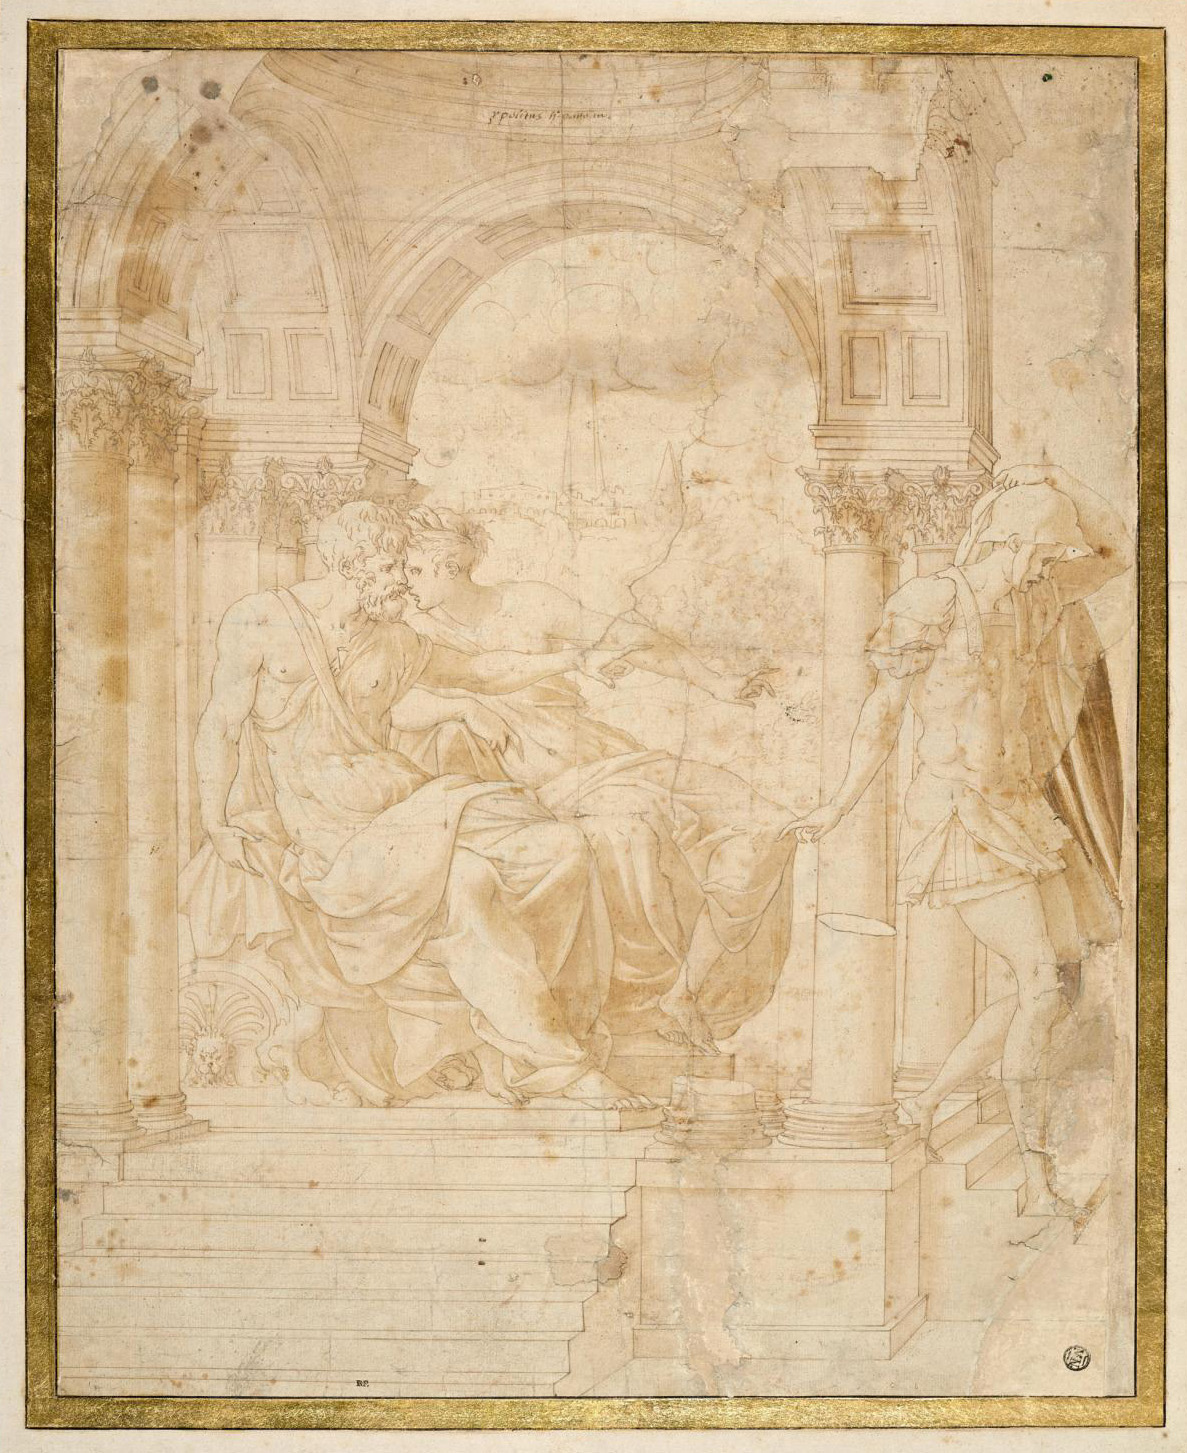 Francesco Primaticcio (1504-1570), Hippolyte accusé par Phèdre auprès de Thésée (Hippolytus accused by Phaedra before Theseus), Paris, Mus